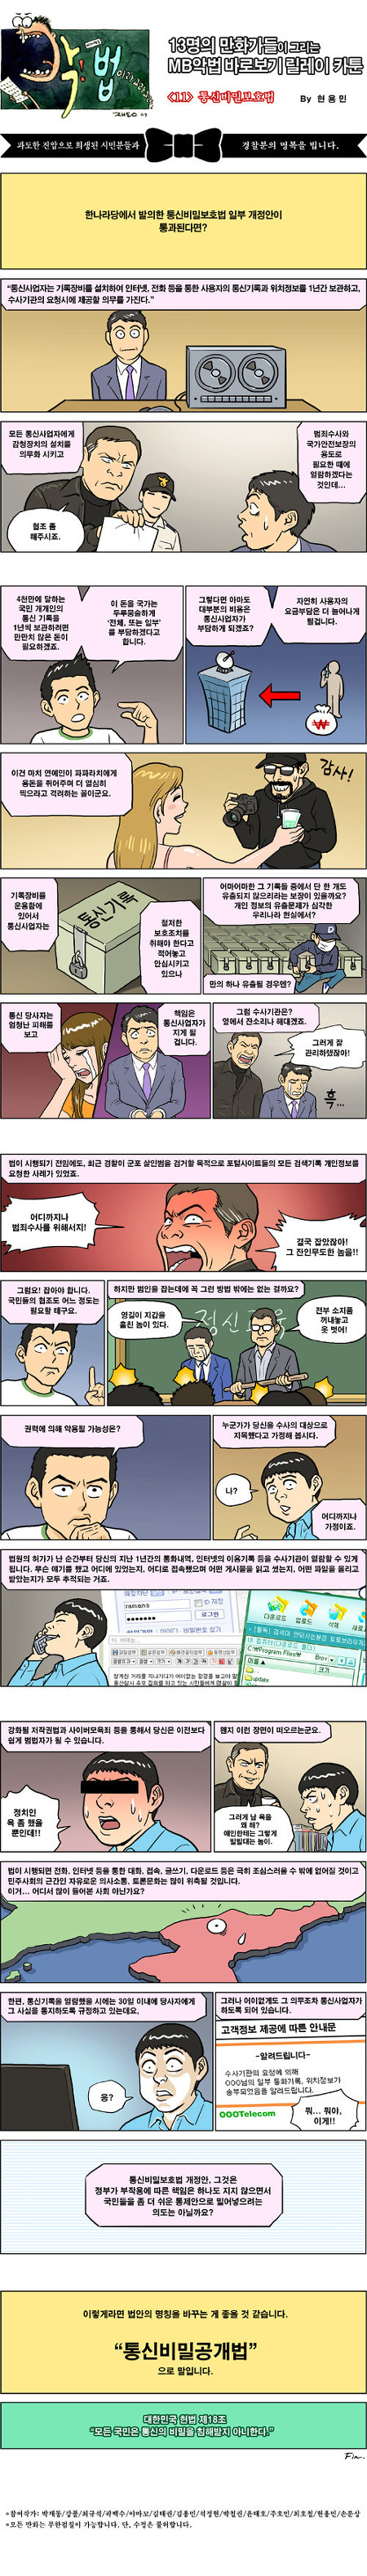 [펌]악법 카툰 릴레이 11화(통신비밀보호법, 현용민)